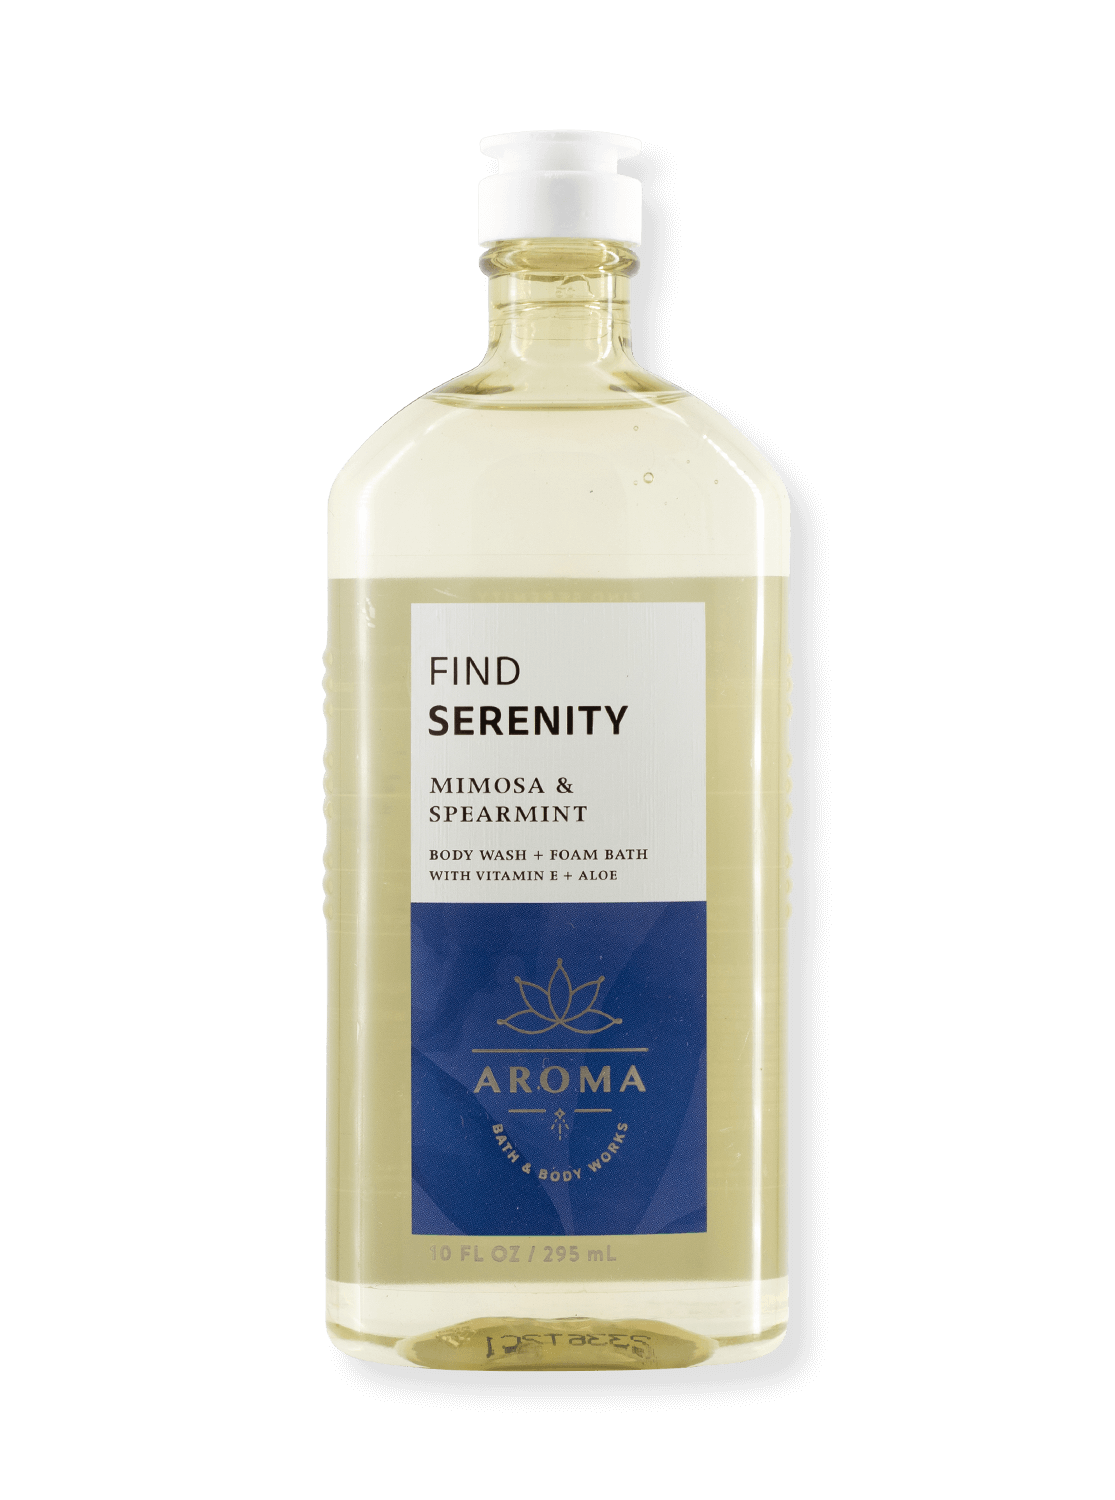 Vente - Gel de douche et bain à bulles - Arôme - Find Serenity - Mimosa & Smenghent - 295ml